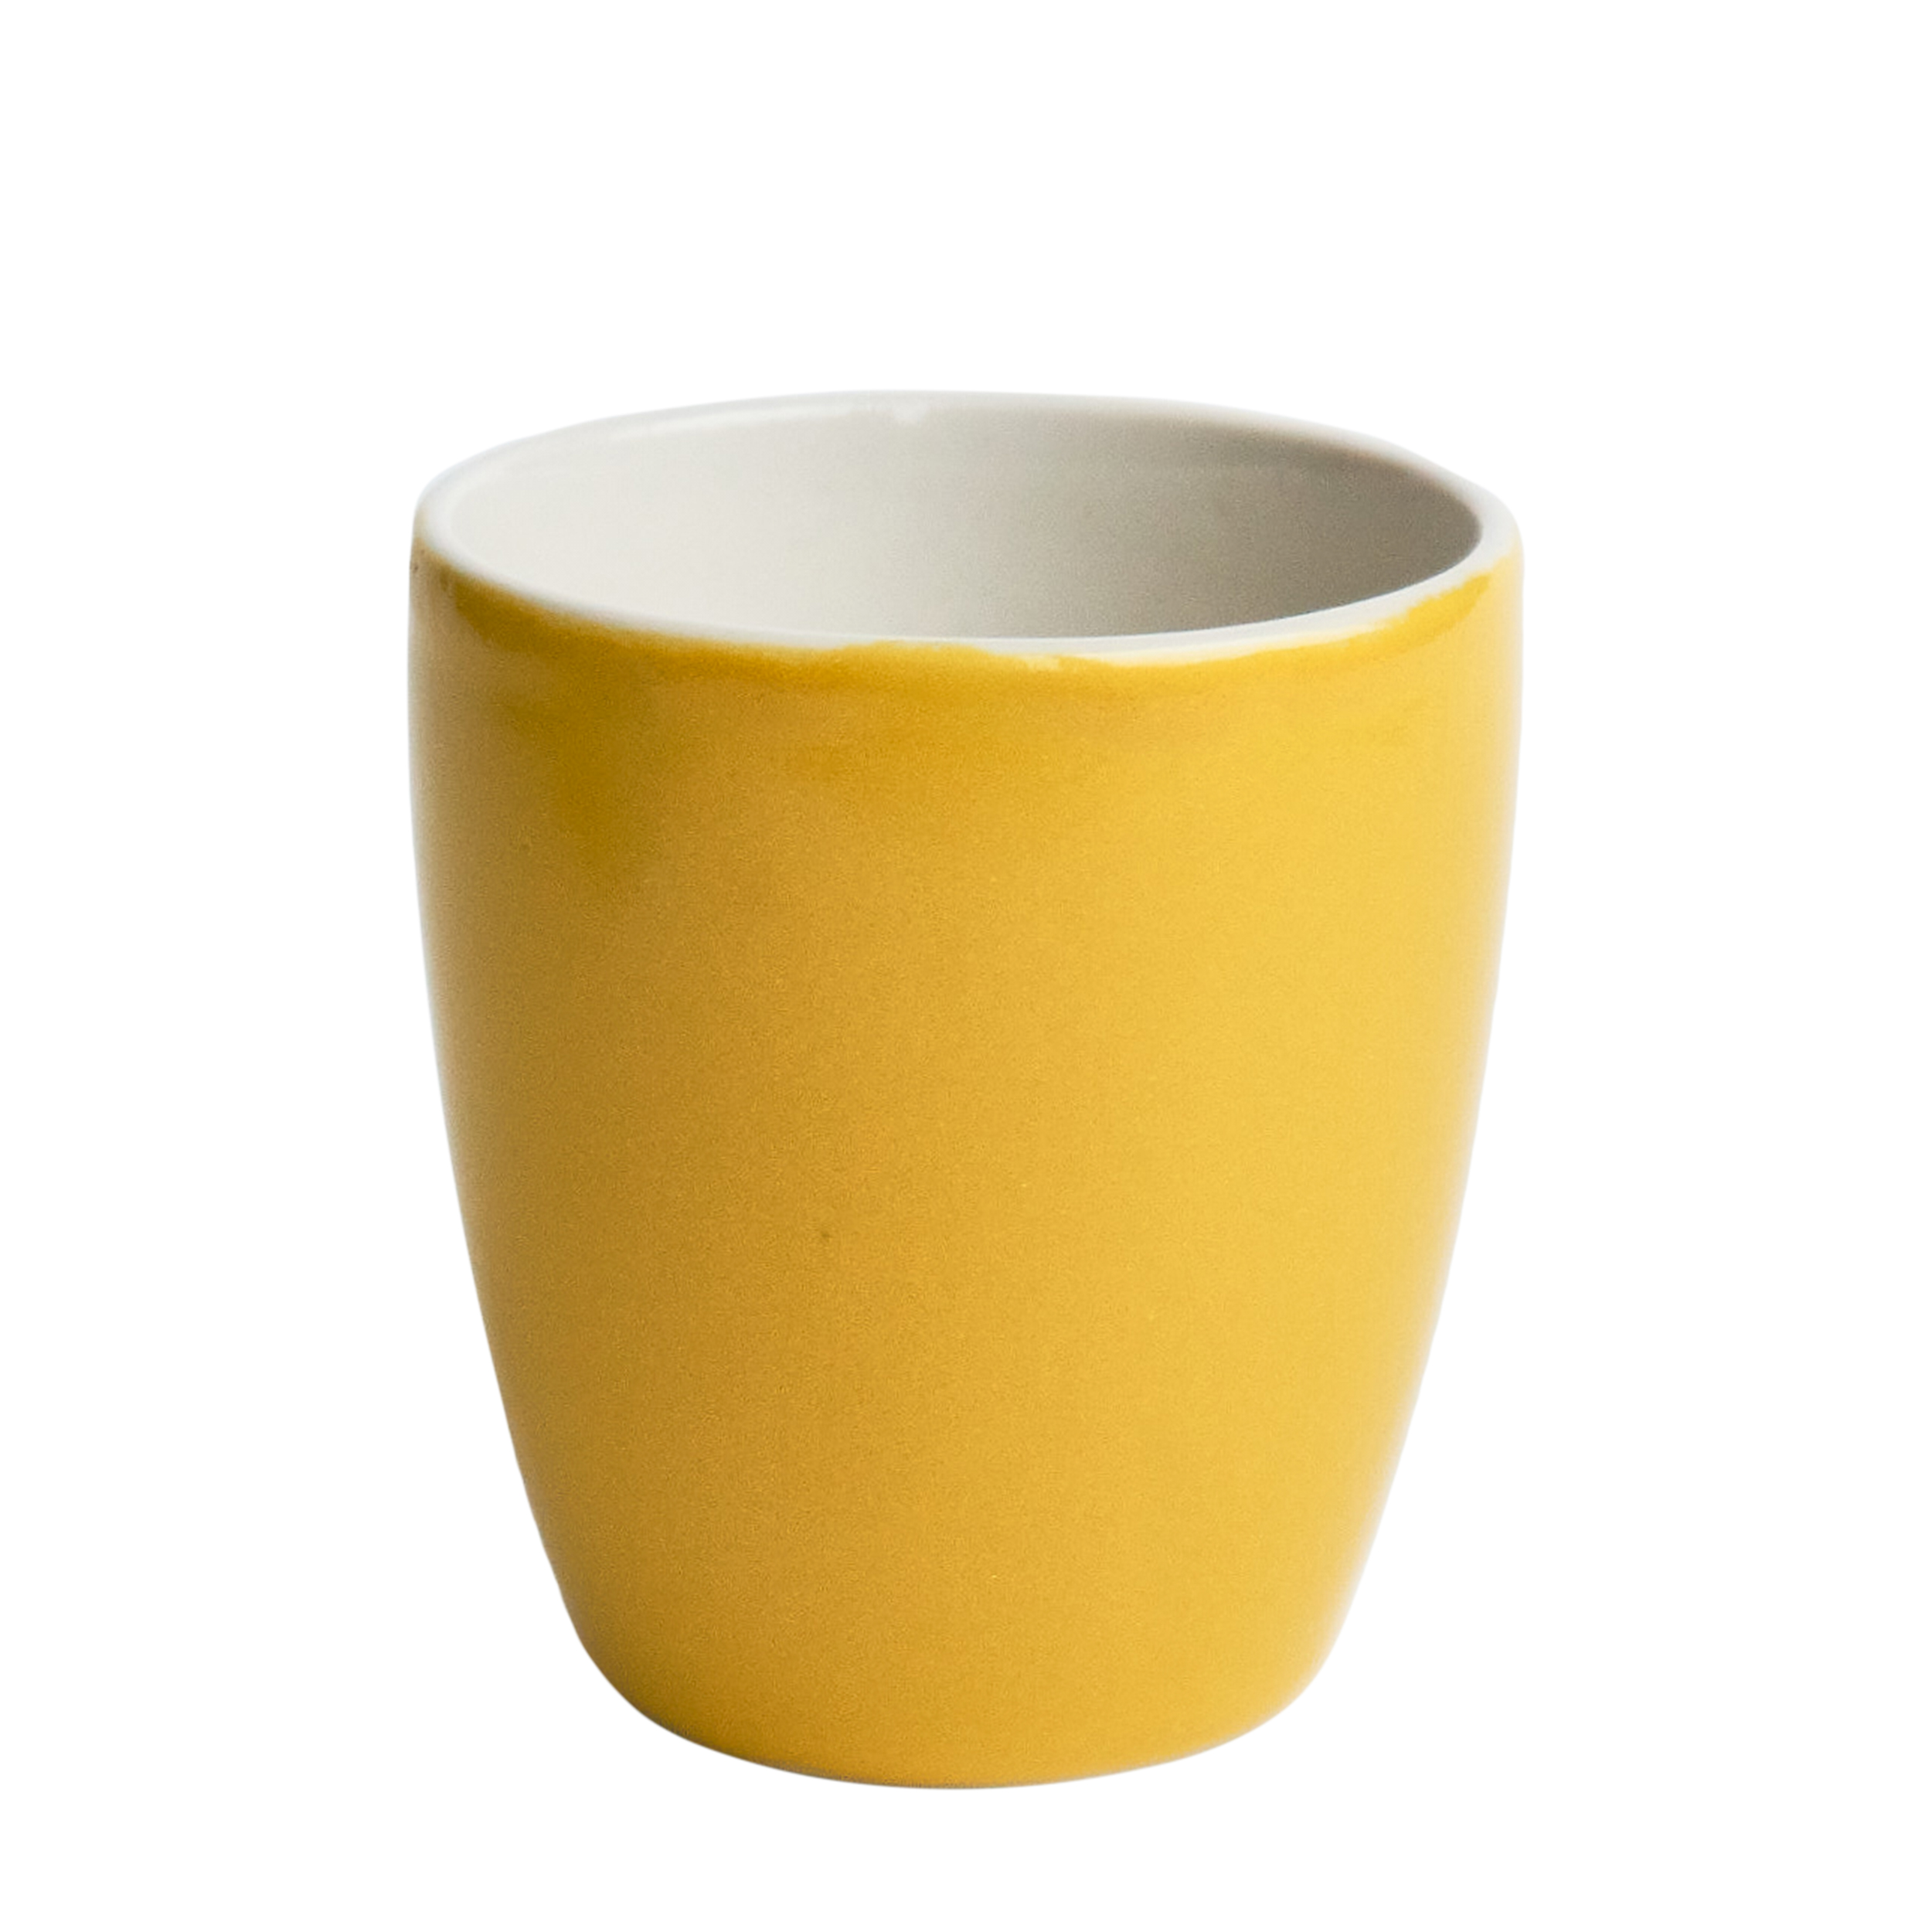 moroz ceramics moroz ceramics Желтый стакан с надписью Send Nudes 18W2133Z - фото 1